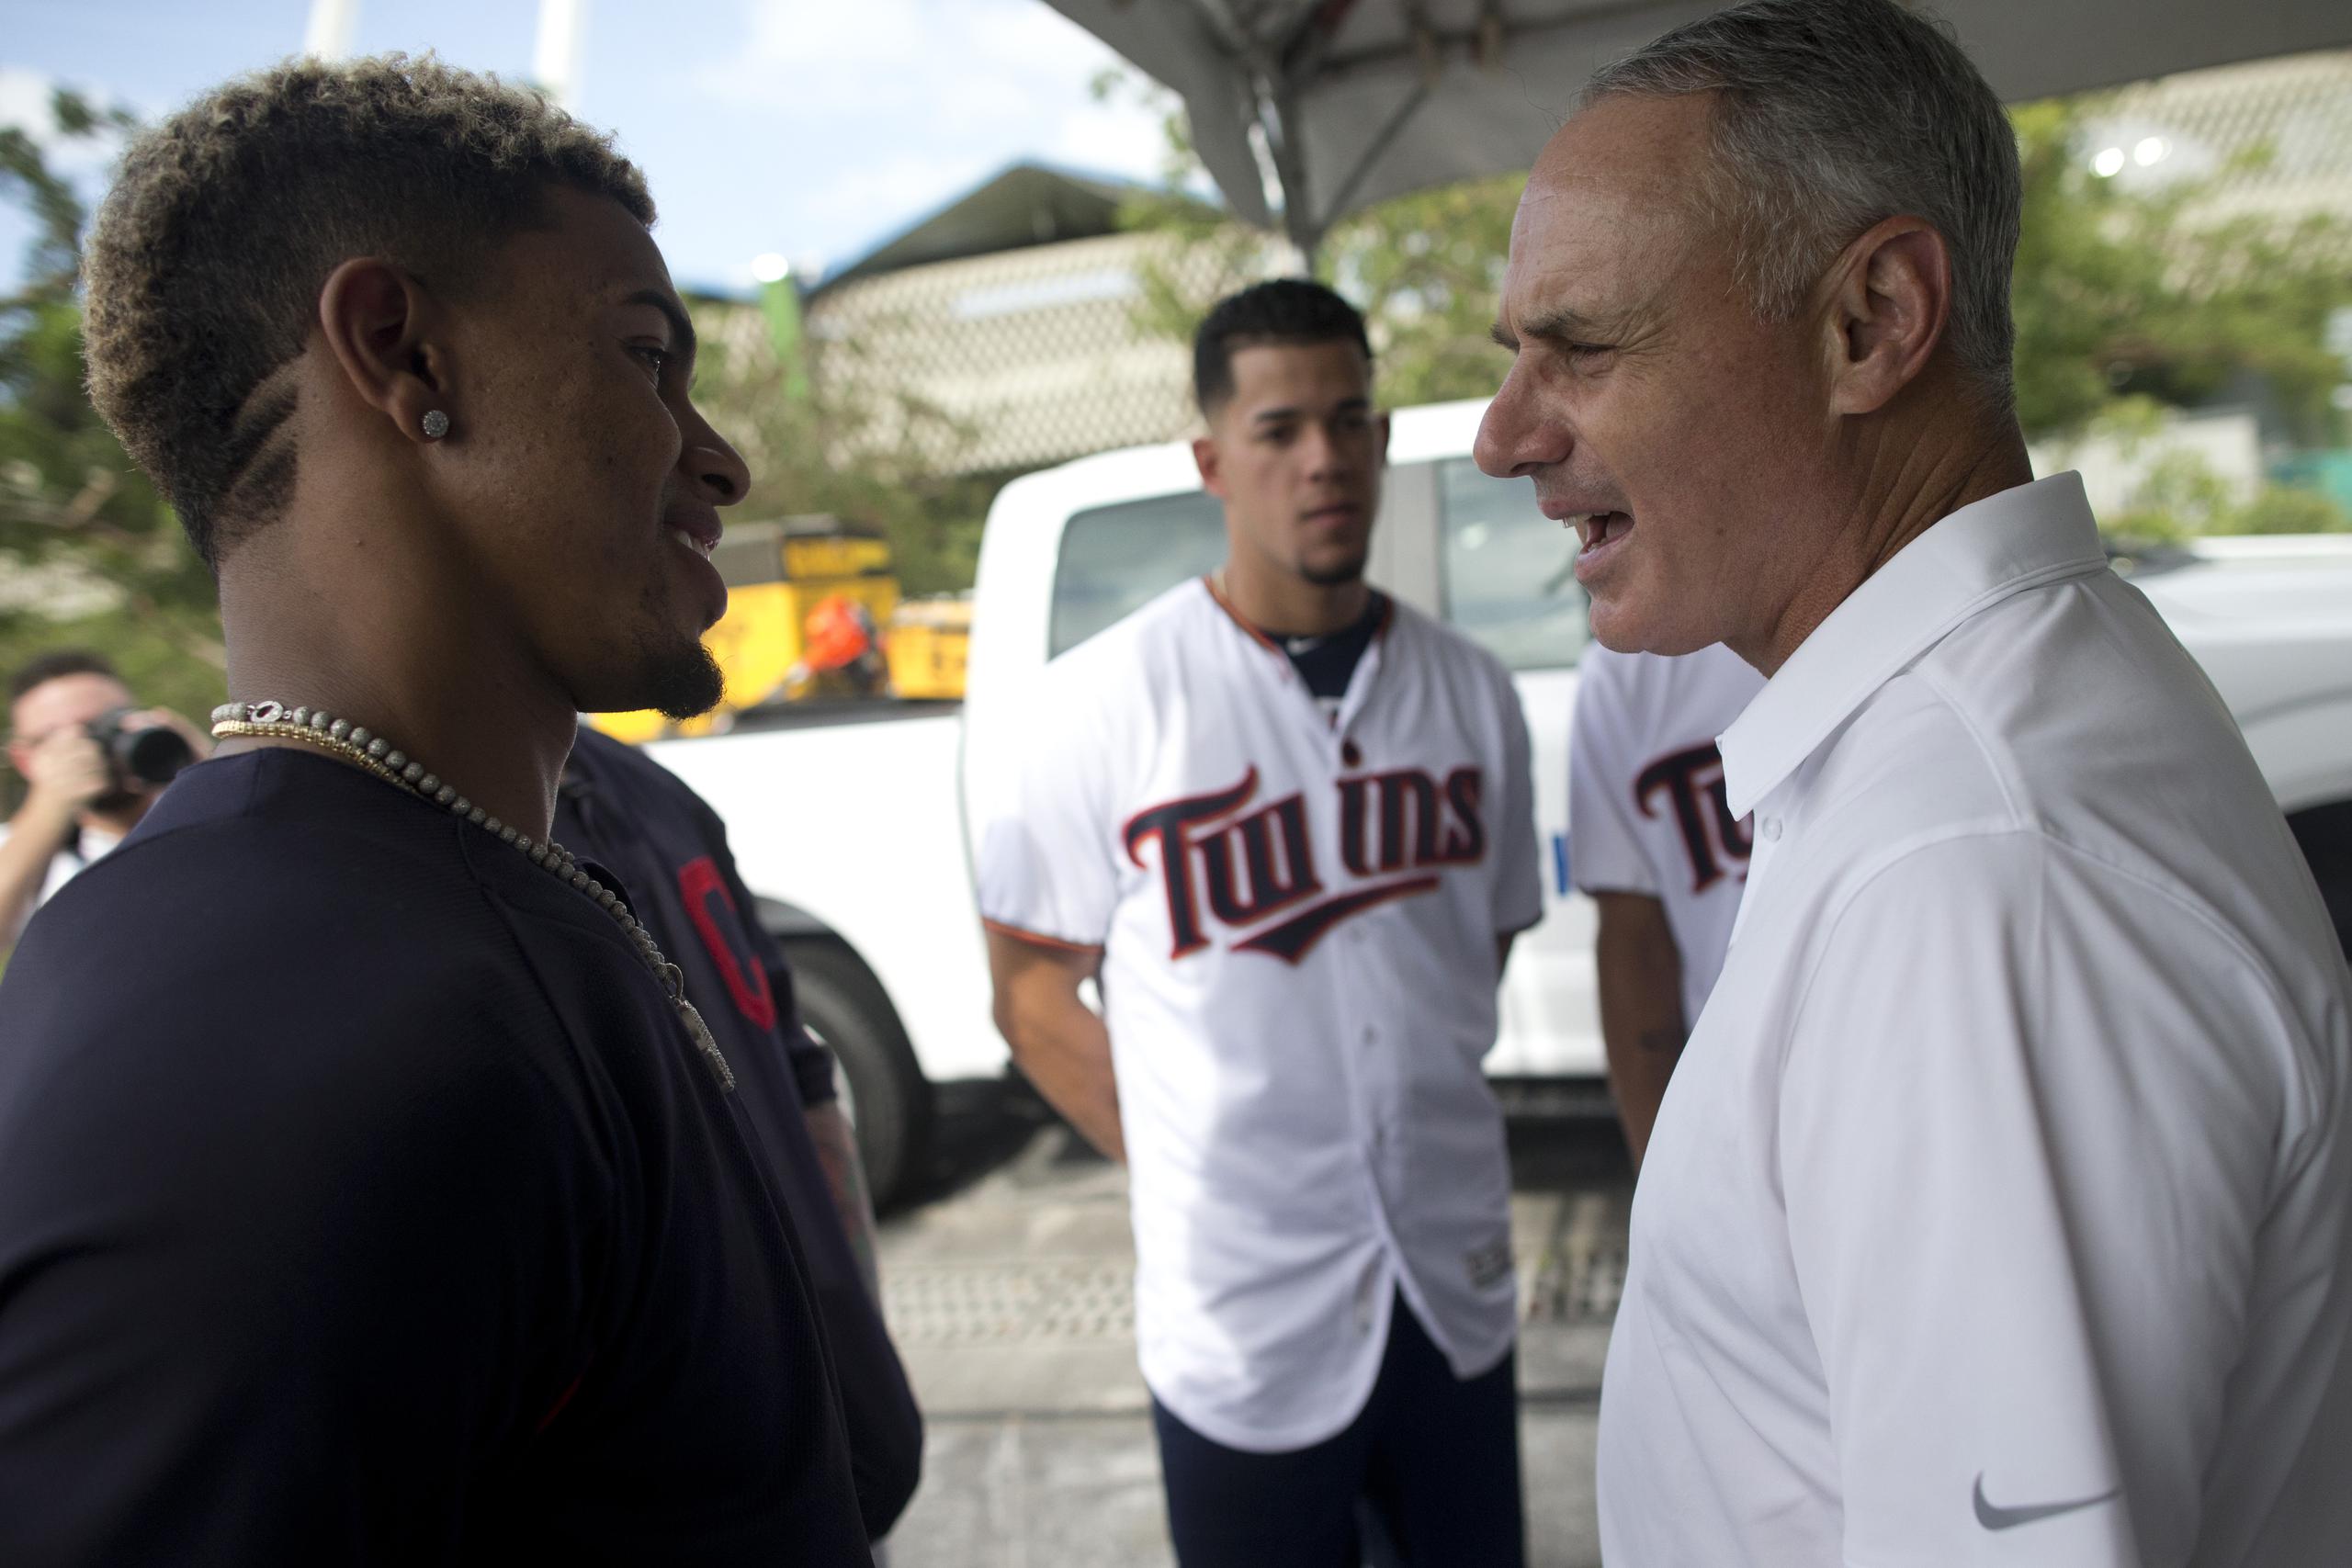 El comisionado de MLB, Rob Manfred, en la foto a la derecha conversando con Francisco Lindor, anunció la iniciativa de los 30 clubes de donar $1 millón cada uno y ayudar a los empleados.